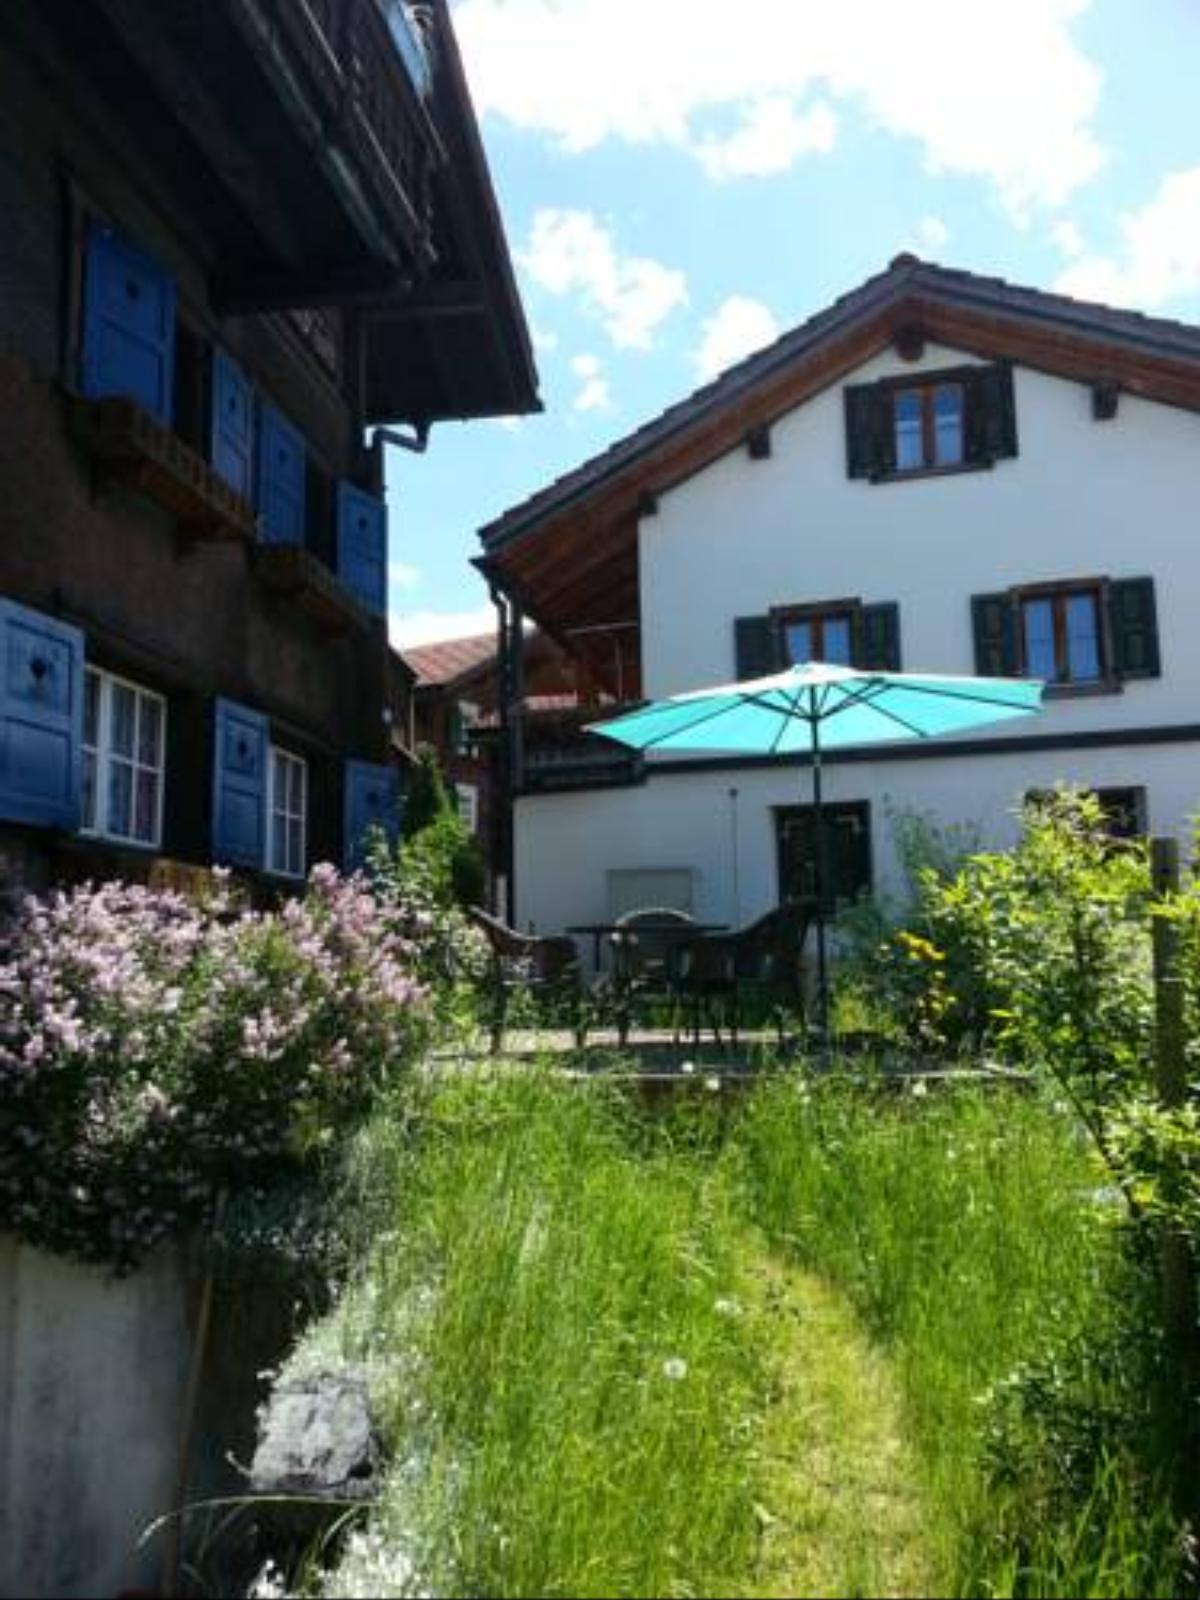 Haus Corina Hotel Klosters Switzerland